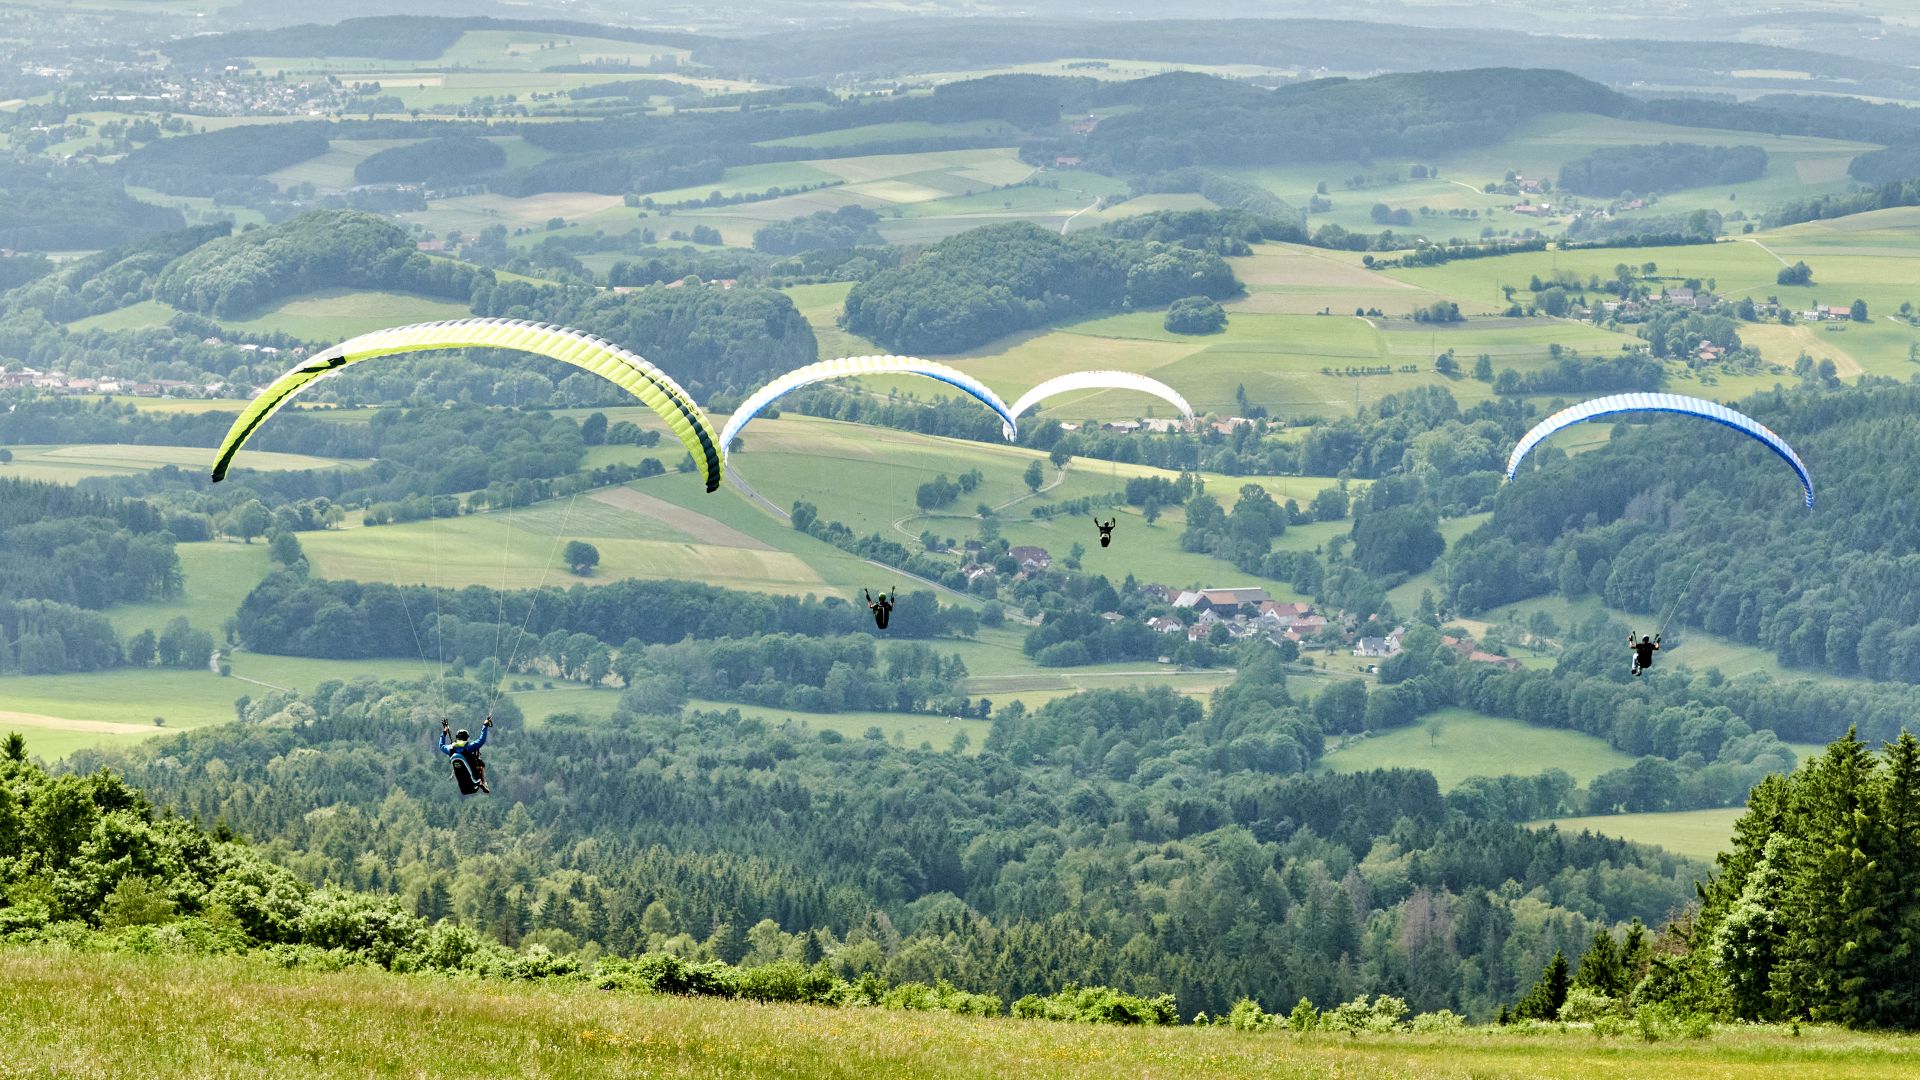 Poppenhausen: Paragliding at the Wasserkuppe in the Rhön Biosphere Reserve